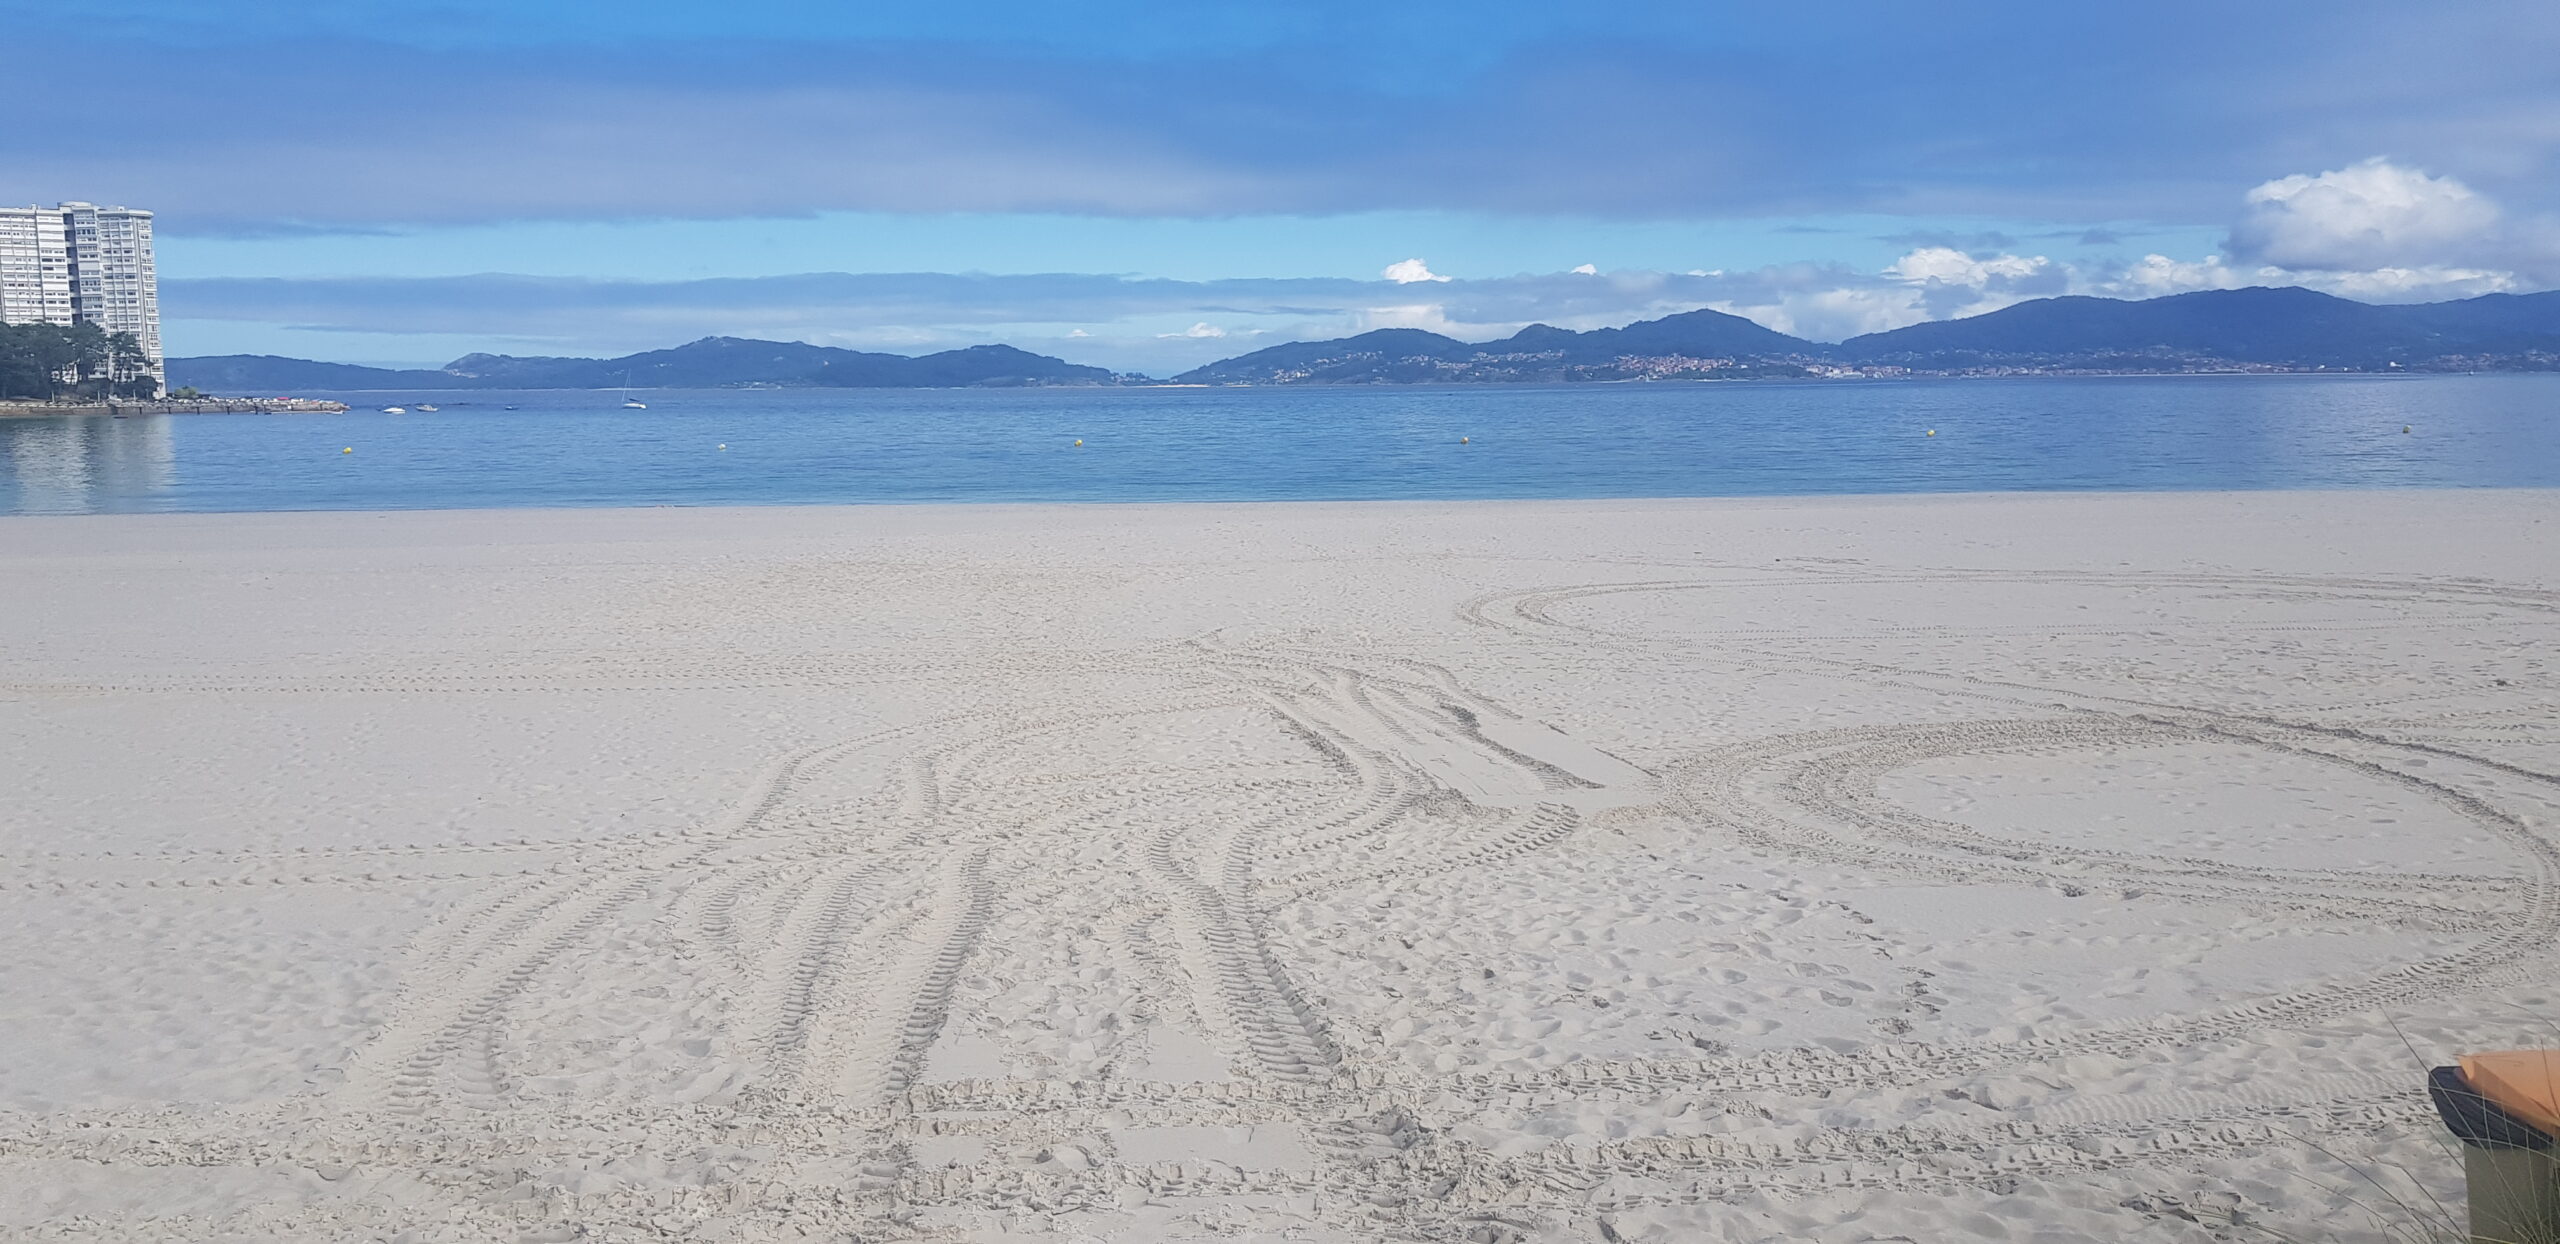 Si vives en Vigo y tienes tiempo libre, aún puedes disfrutar de la playa estos días